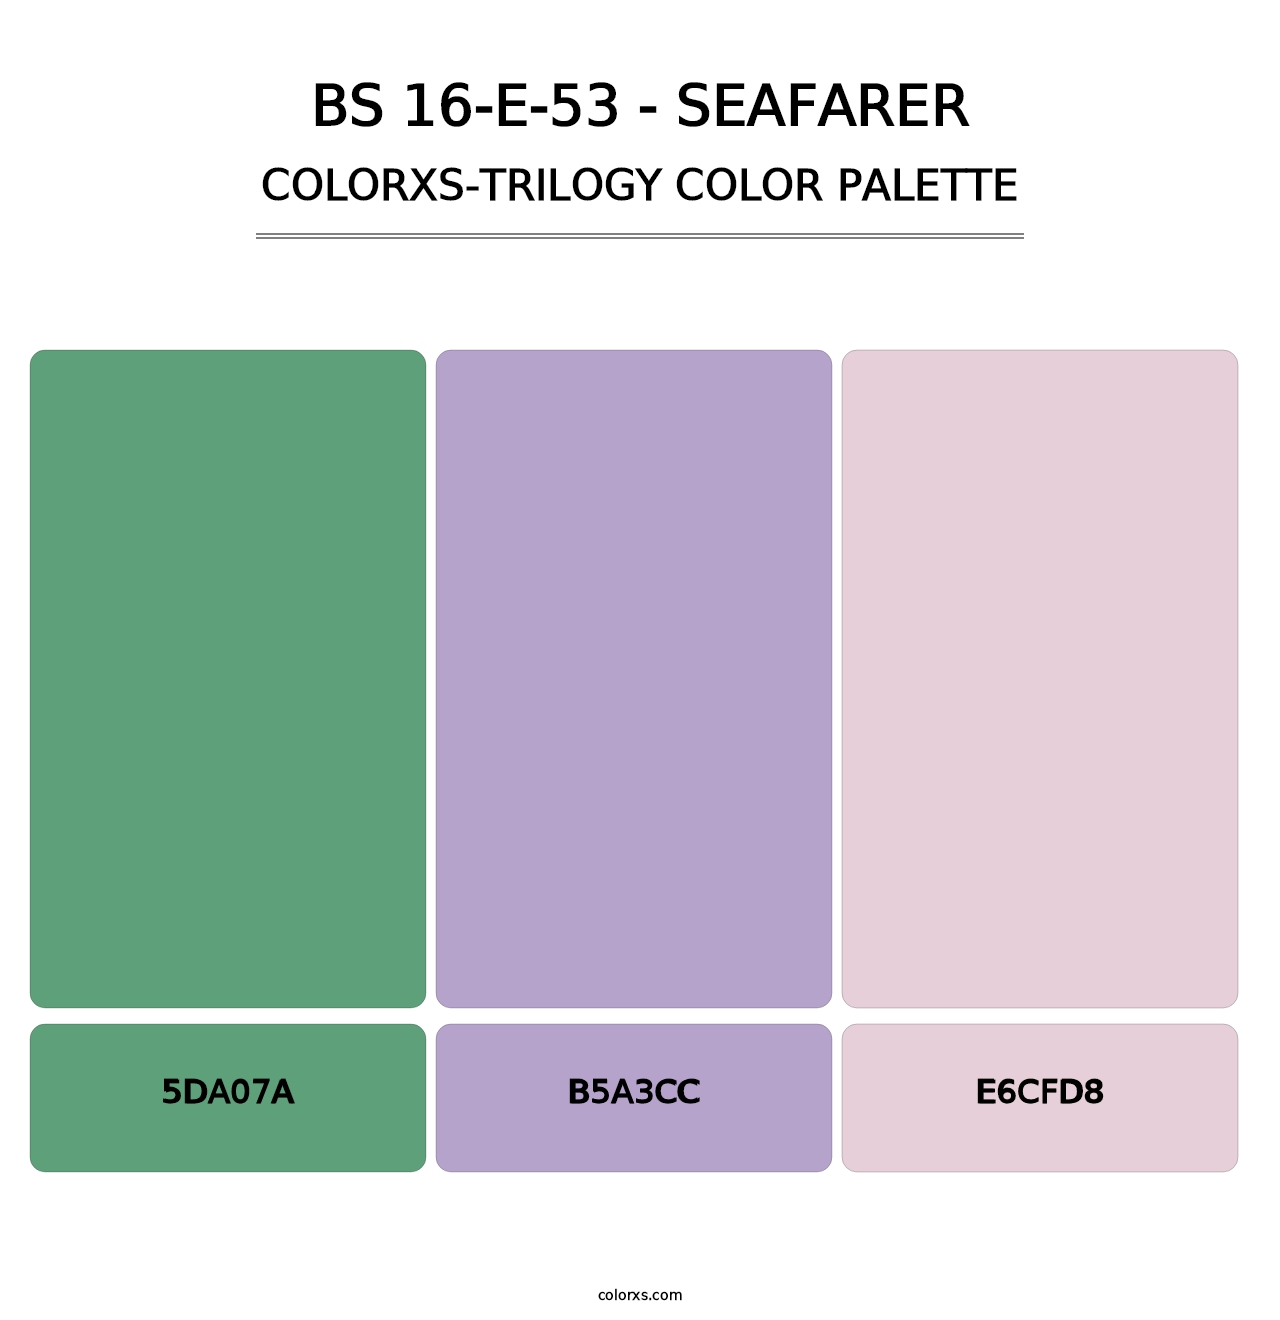 BS 16-E-53 - Seafarer - Colorxs Trilogy Palette